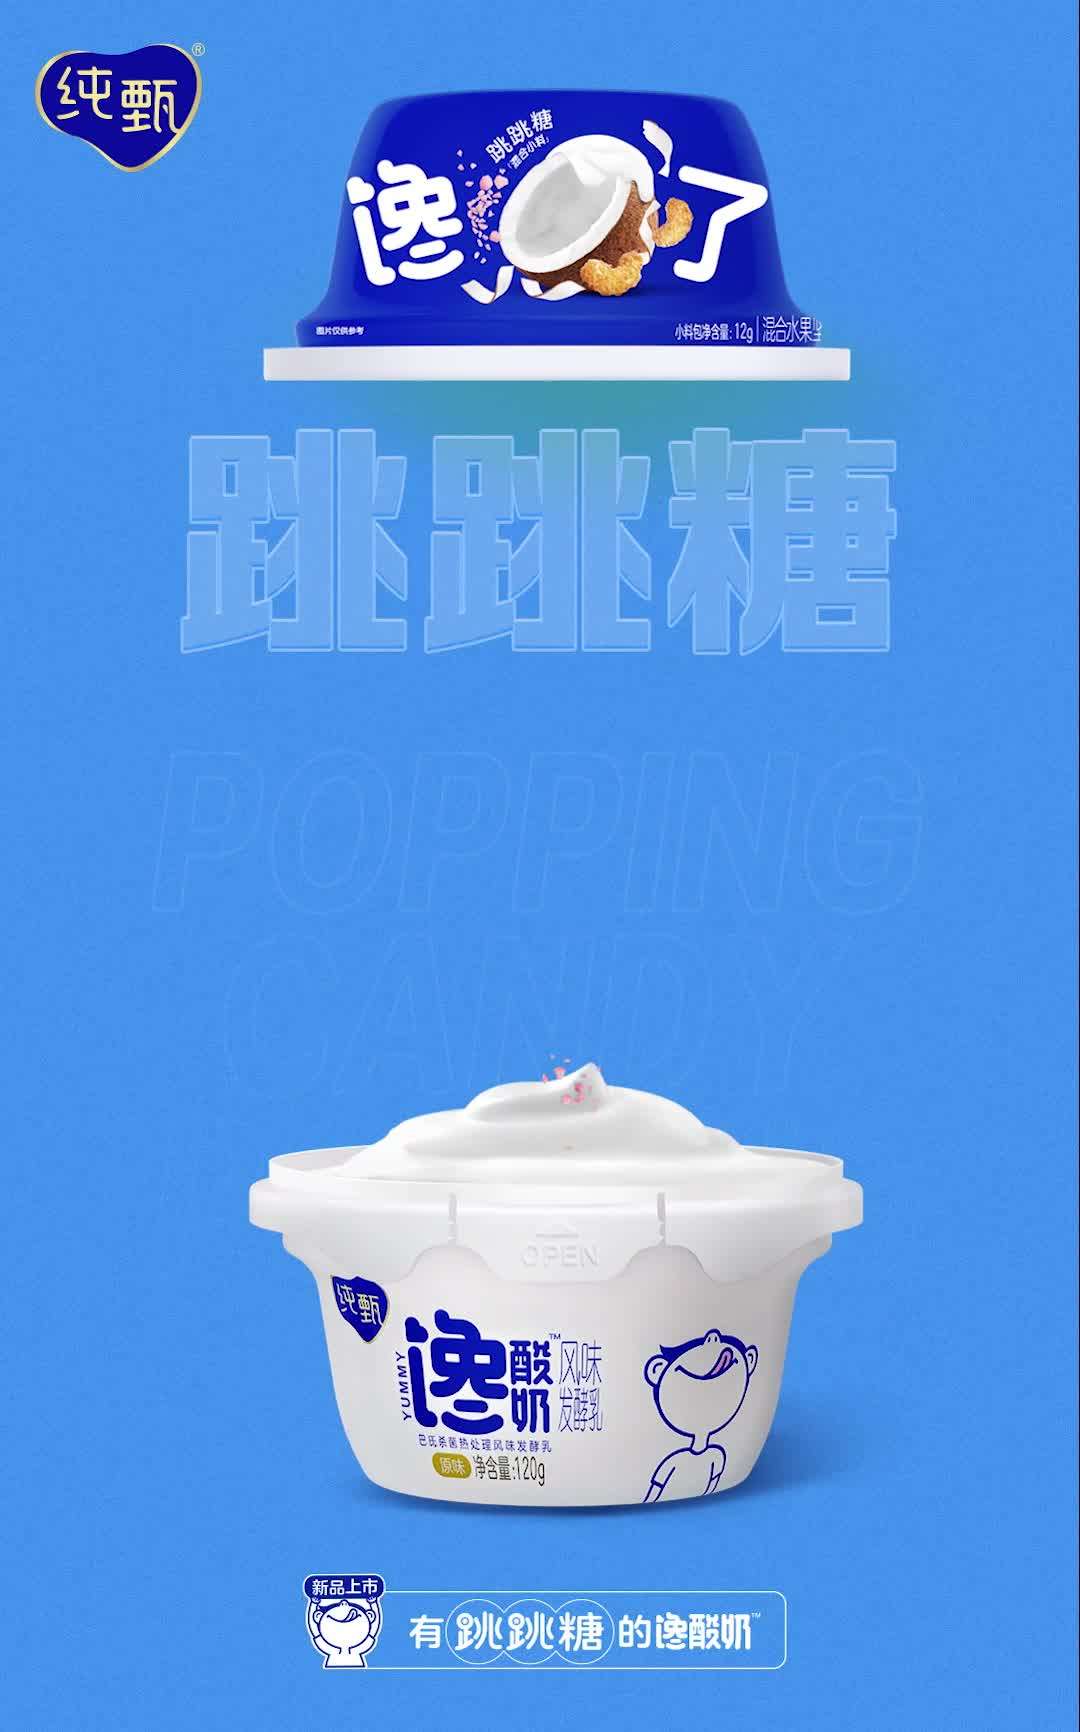 纯甄馋酸奶腰果椰蓉口味新品上市动态海报